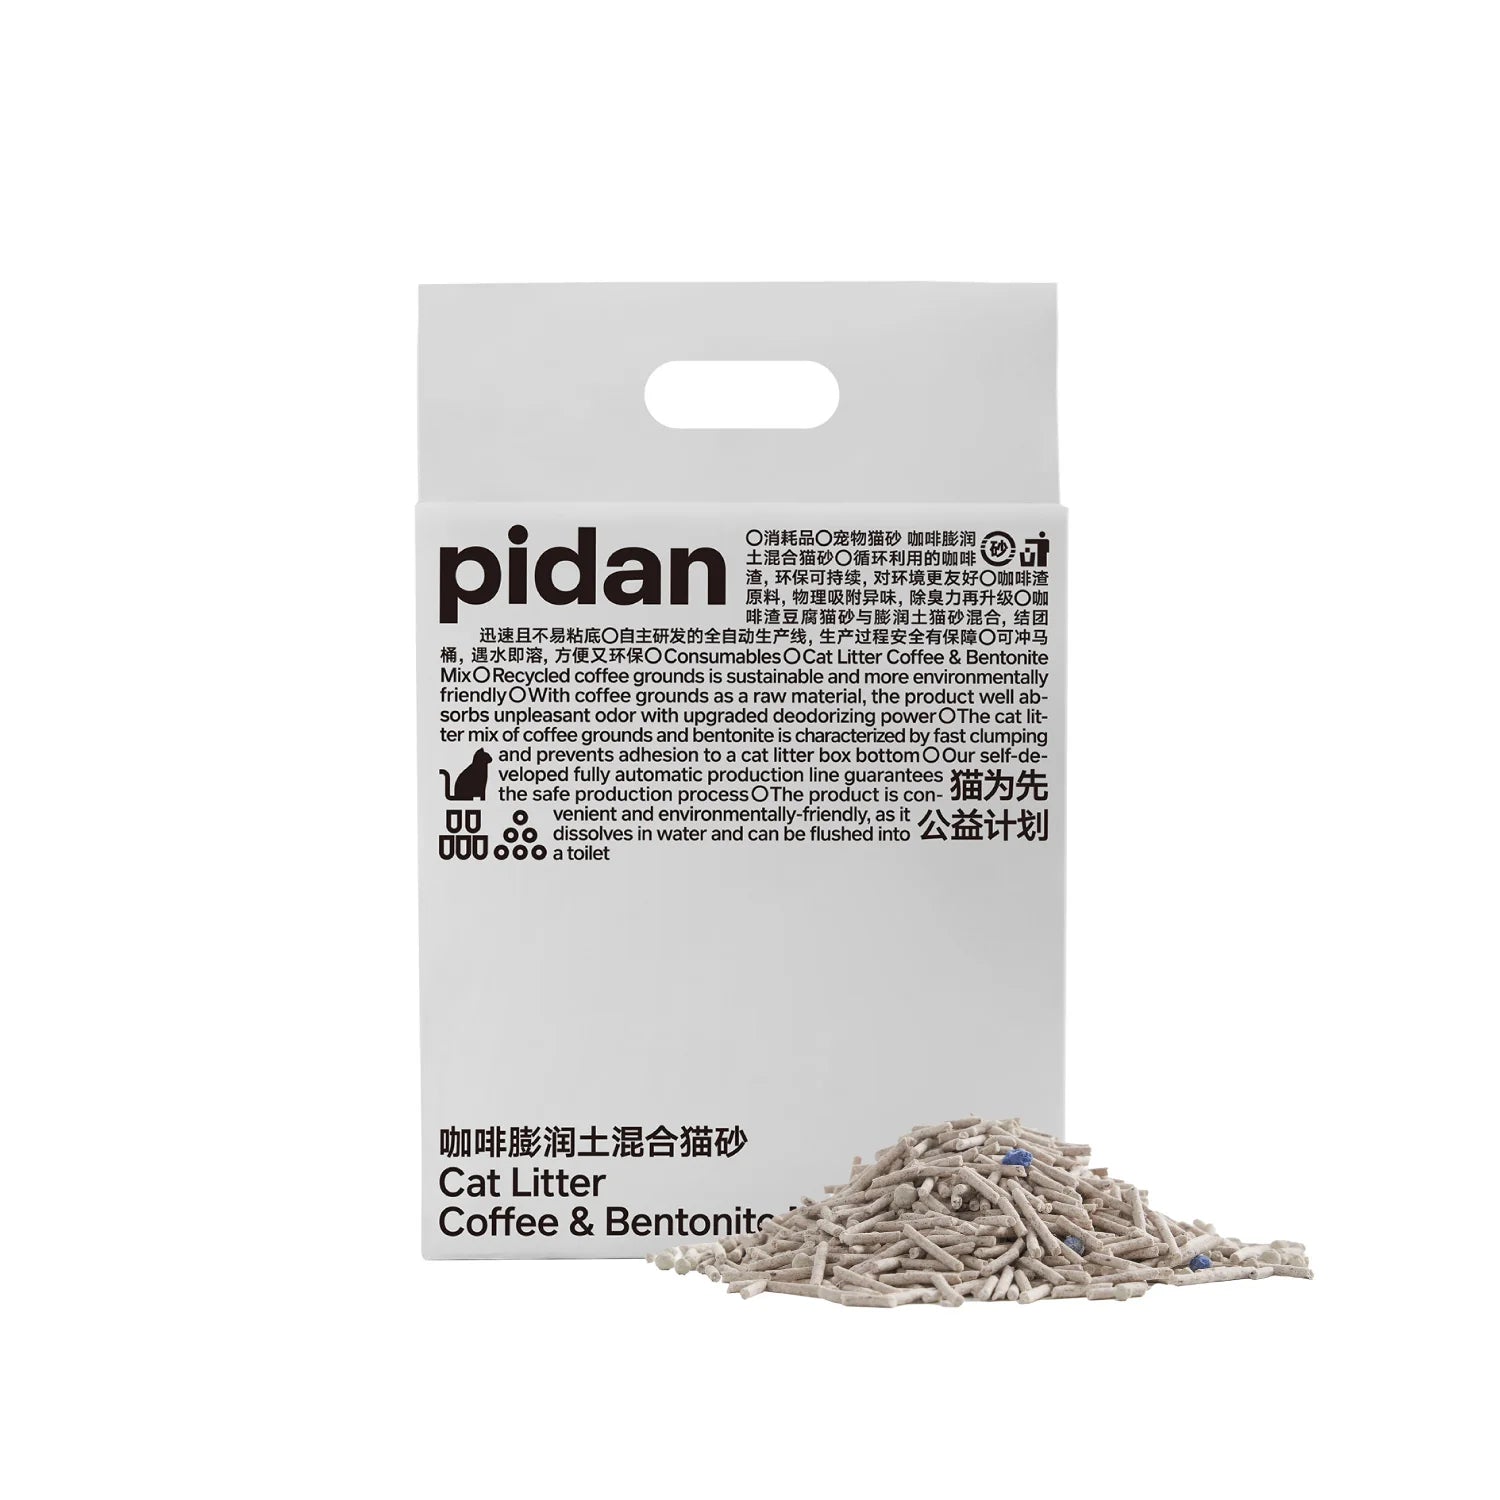 pidan Cat Litter Tofu Coffee and Bentonite Mix